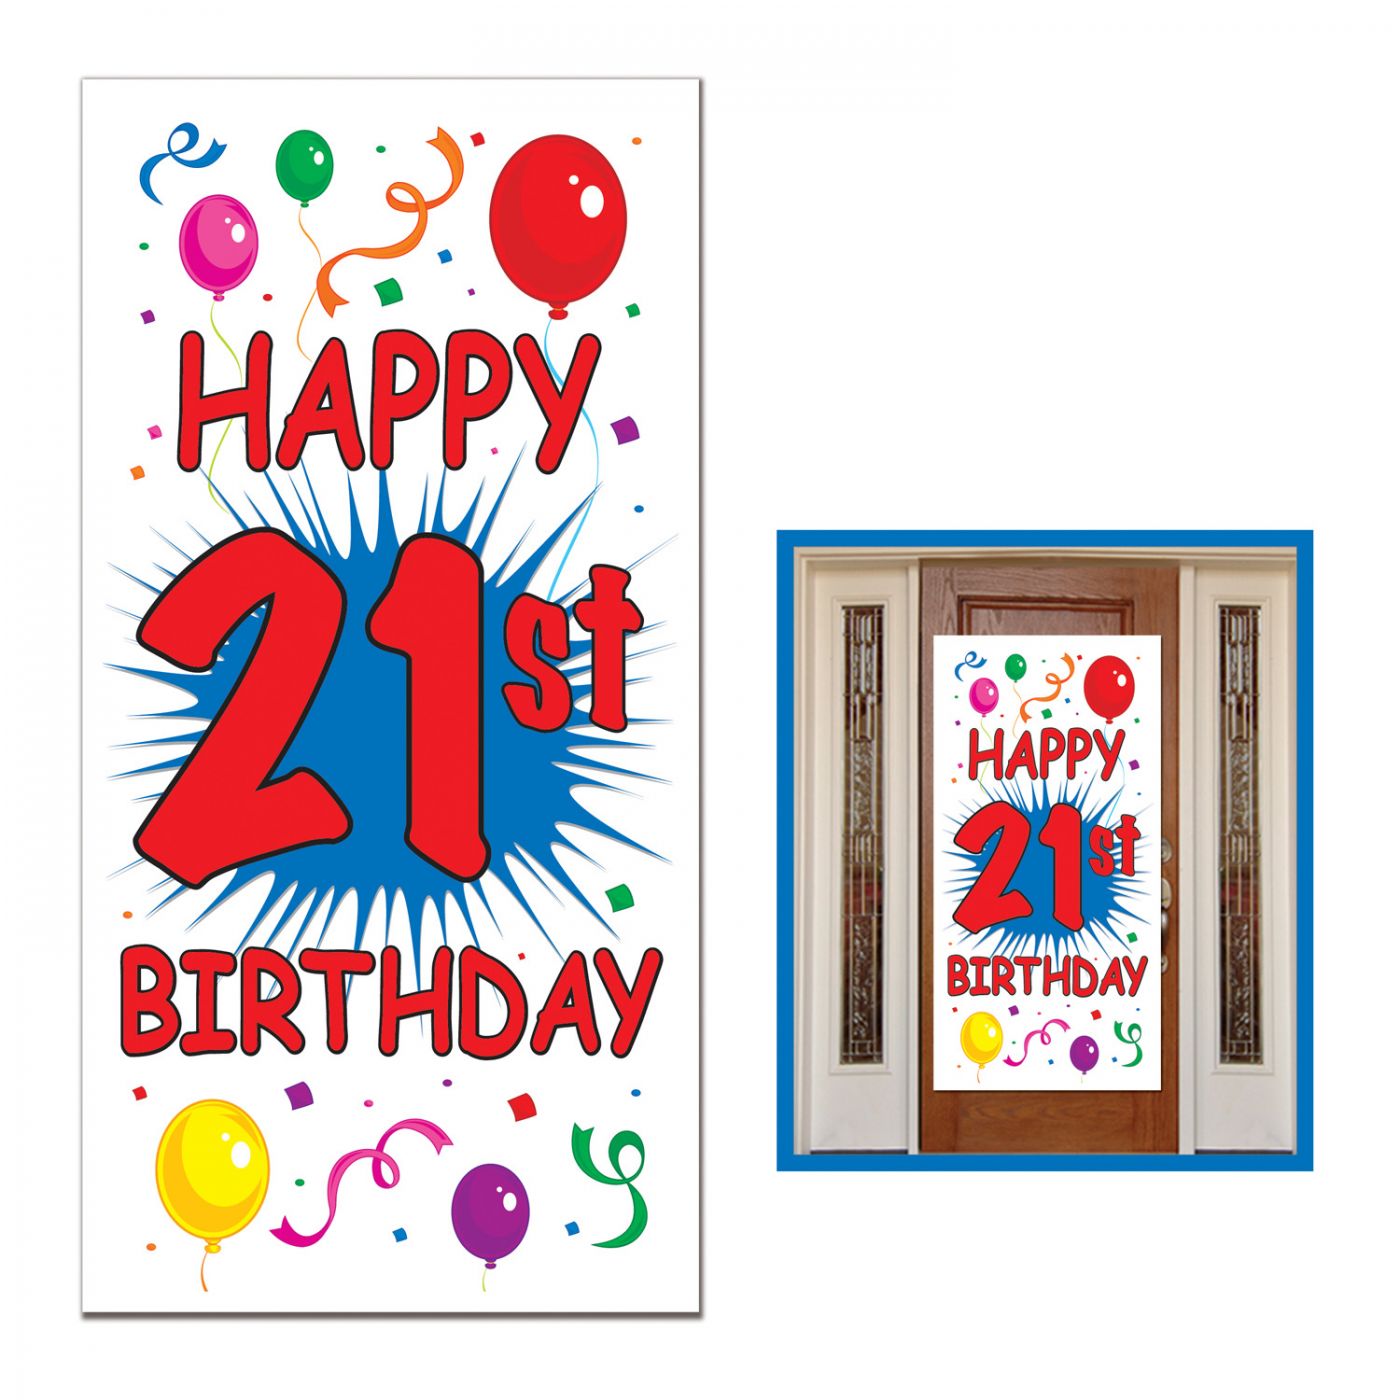 Image of 21st Birthday Door Cover